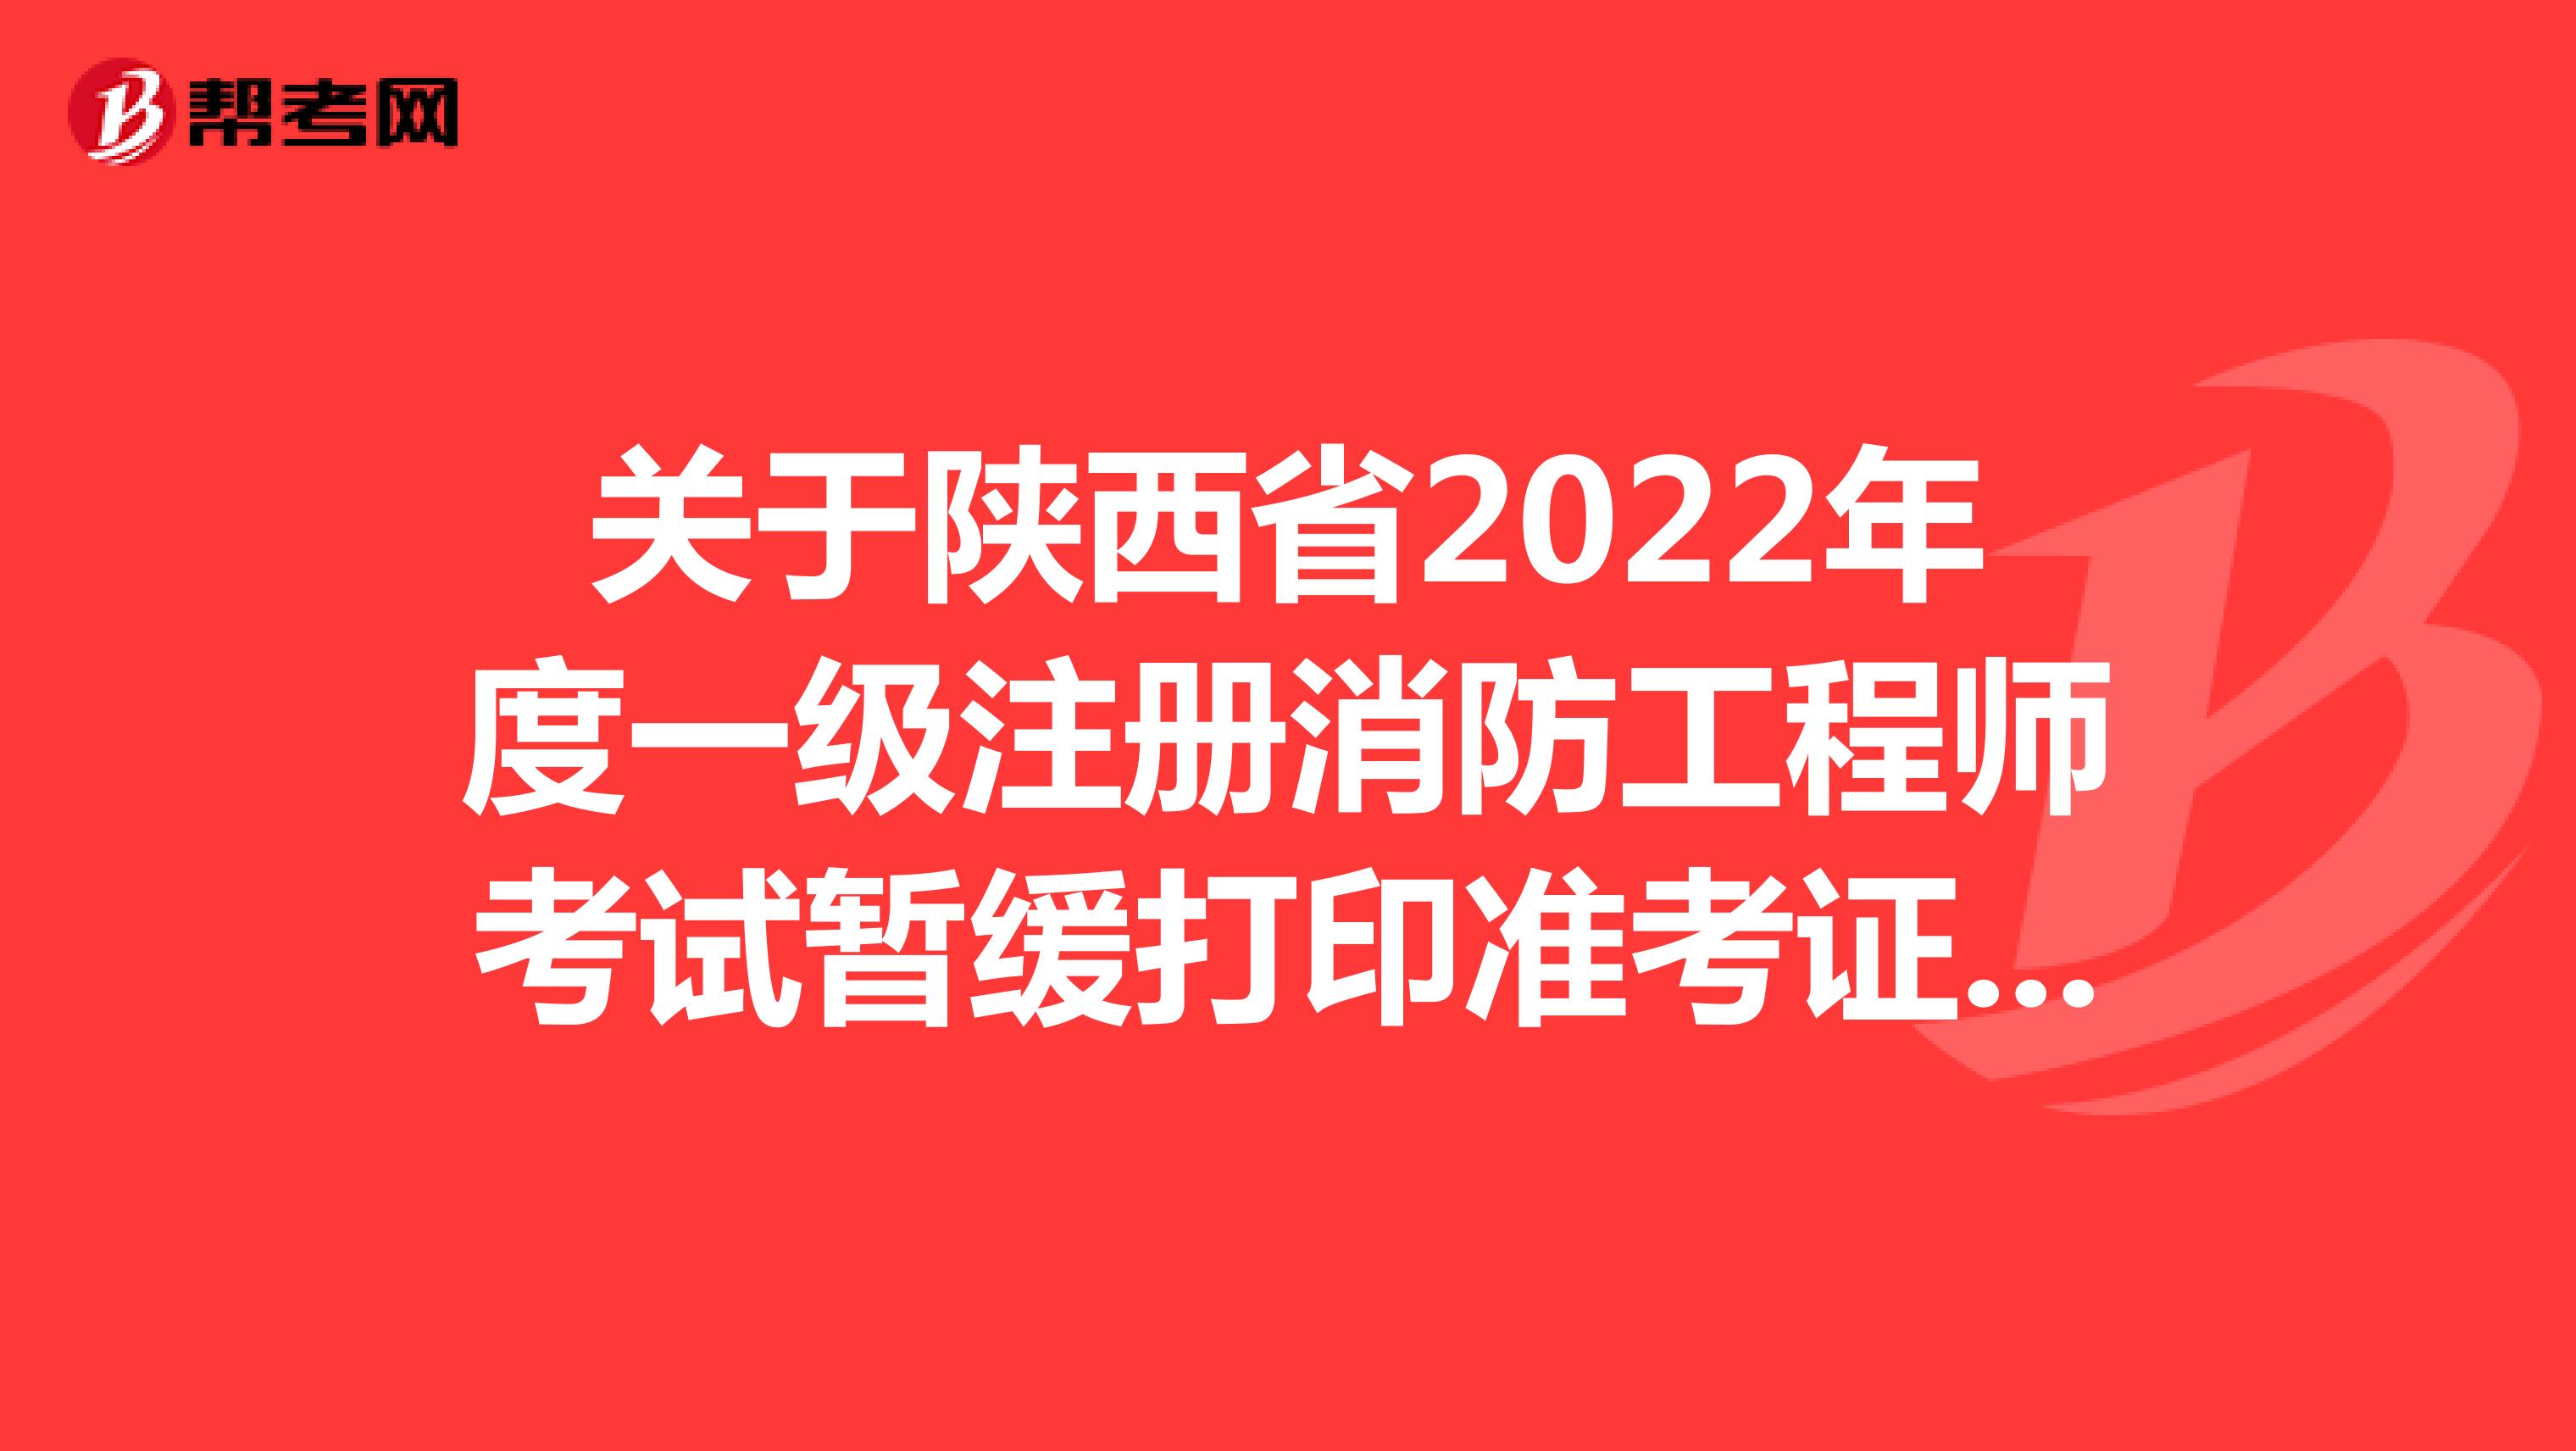 关于陕西省2022年度一级注册消防工程师考试暂缓打印准考证的通知